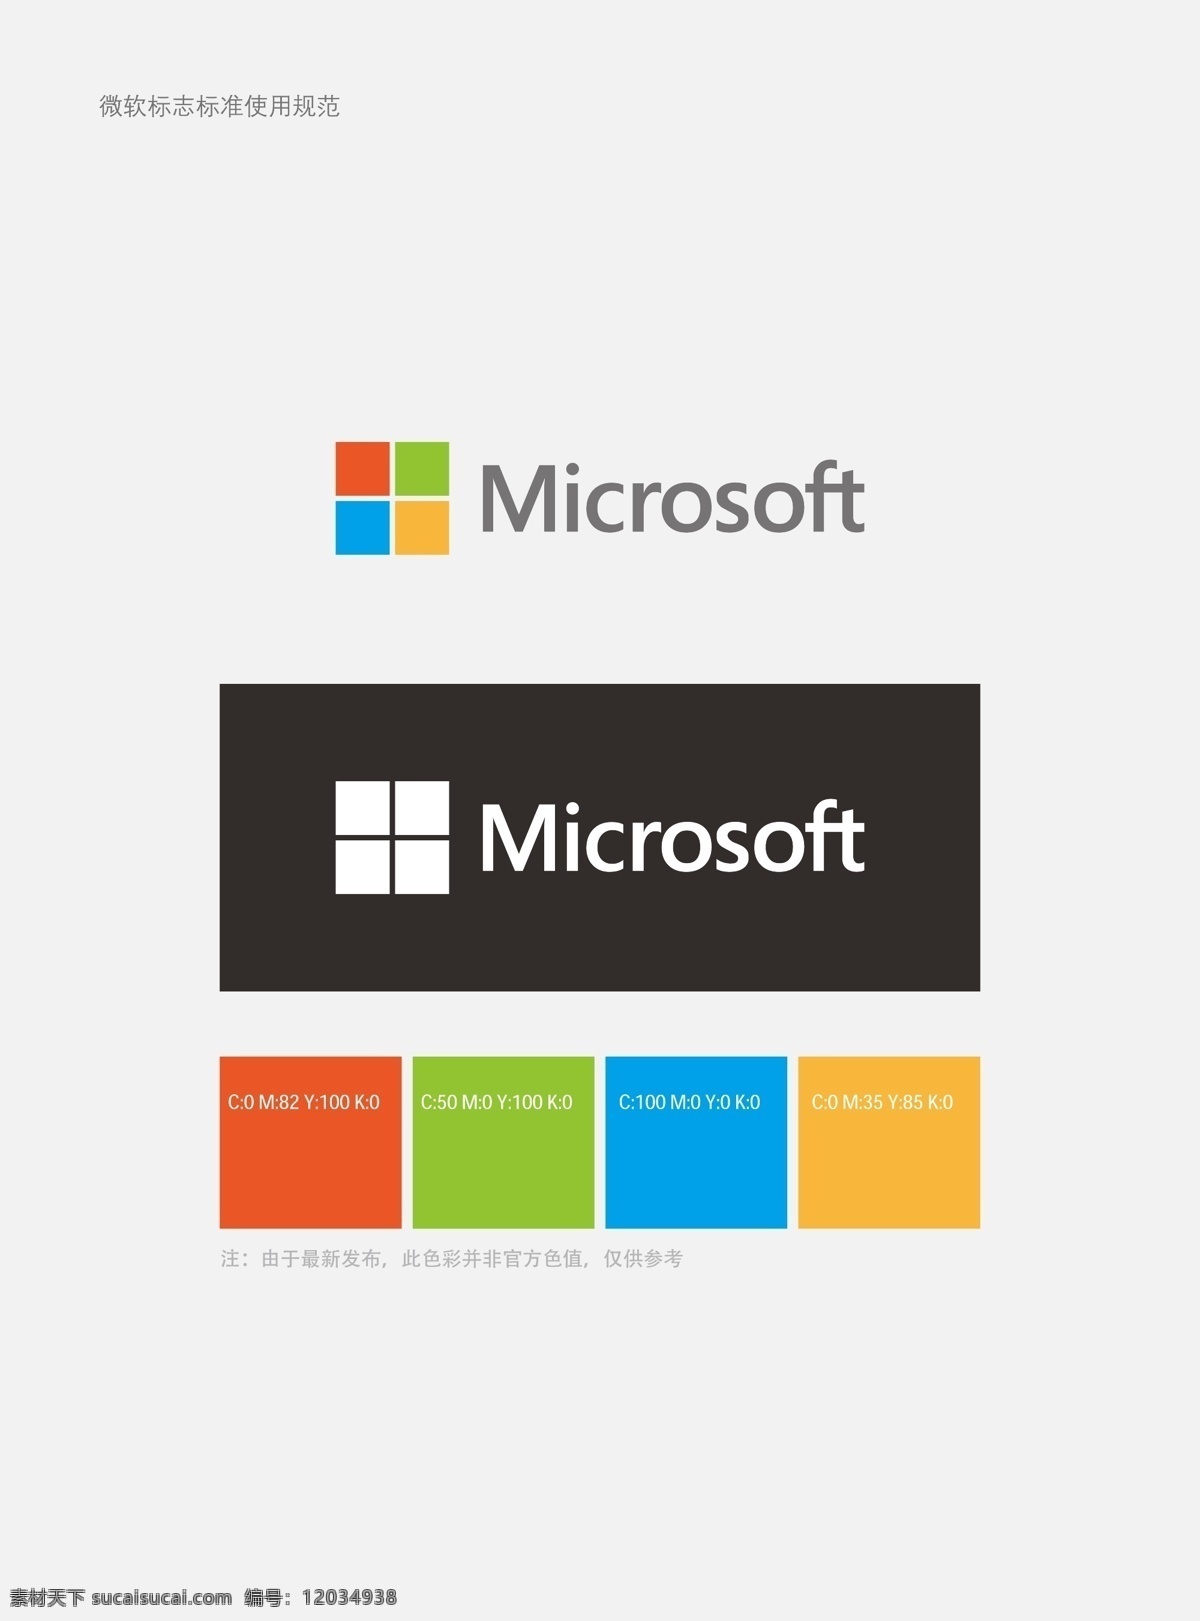 微软logo 微软 logo 标准 微软用色标准 微软标志 microsoft 企业 标志 标识标志图标 矢量